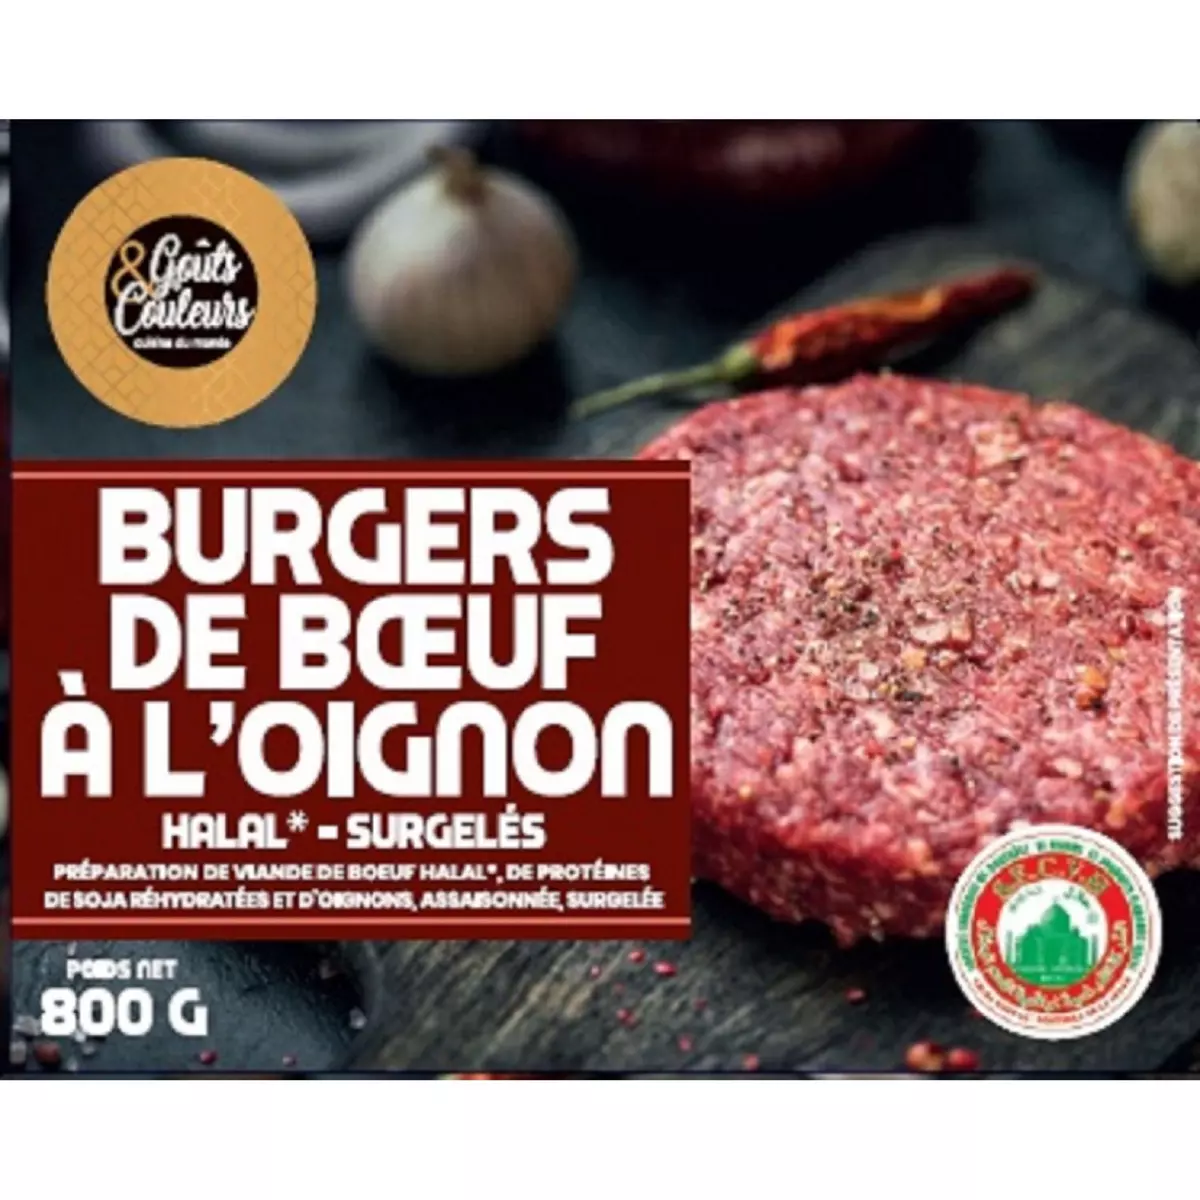 GOUTS & COULEURS Steak haché de boeuf halal à l'oignon burger 10 pièces 800g